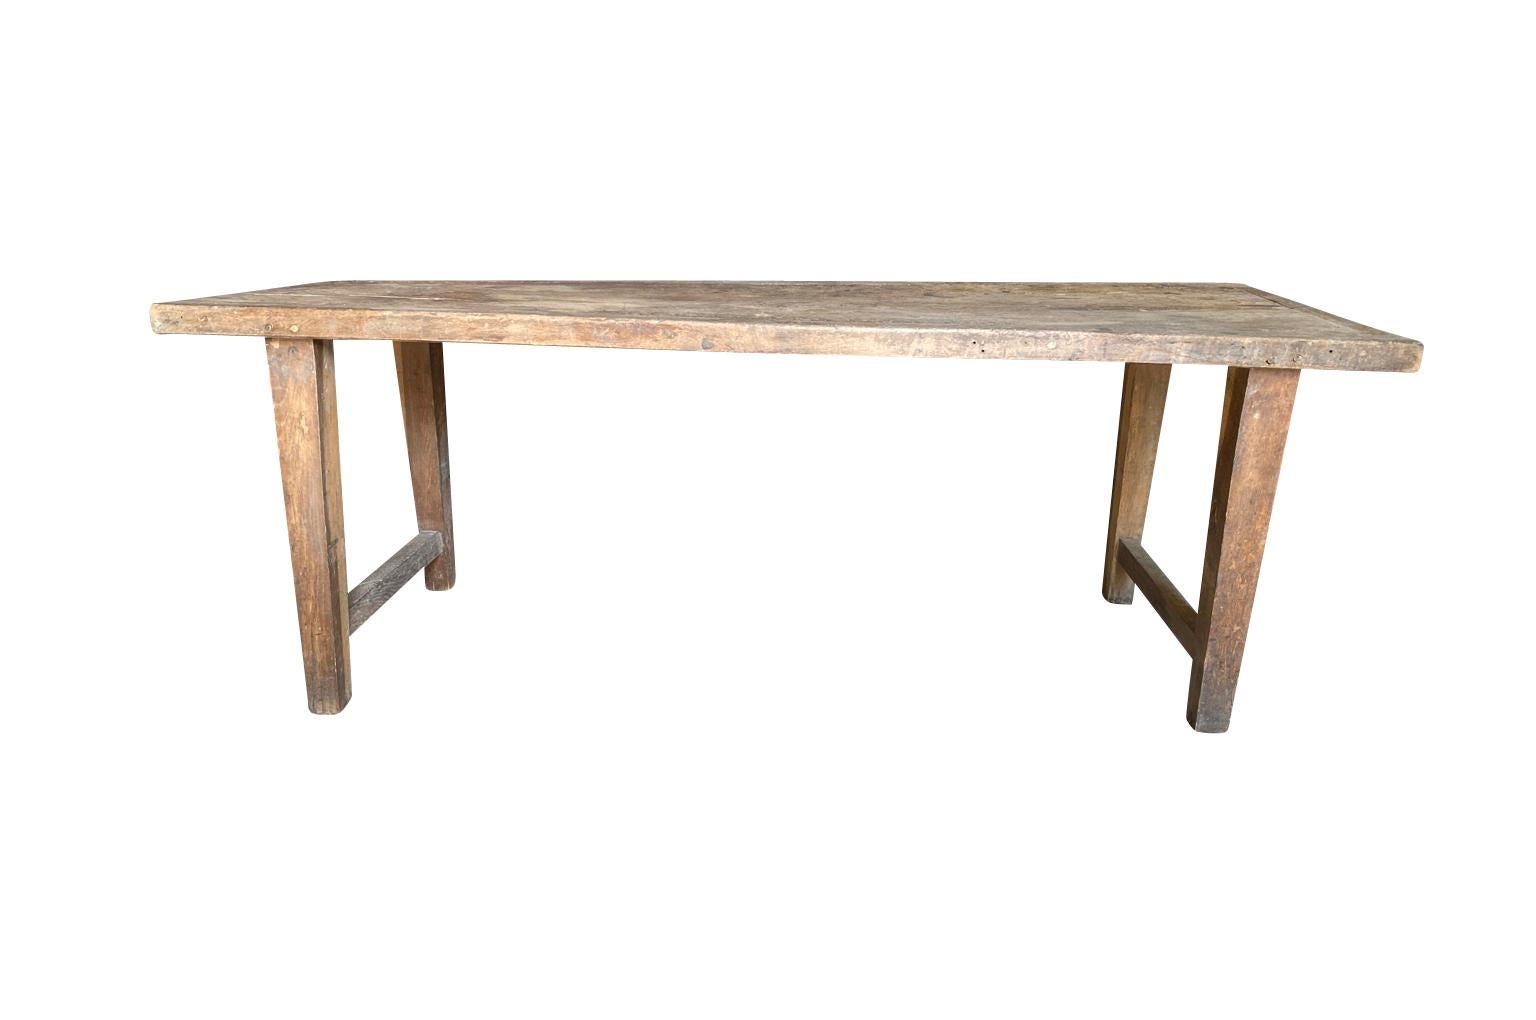 Ein sehr schöner französischer primitiver Arbeitstisch aus dem späten 19. Jahrhundert - Farm Table in Eiche. Minimalistische Linien verleihen diesem Tisch eine sehr moderne Ausstrahlung. Hübsche Patina. Auch als Esstisch oder Konsole wunderbar